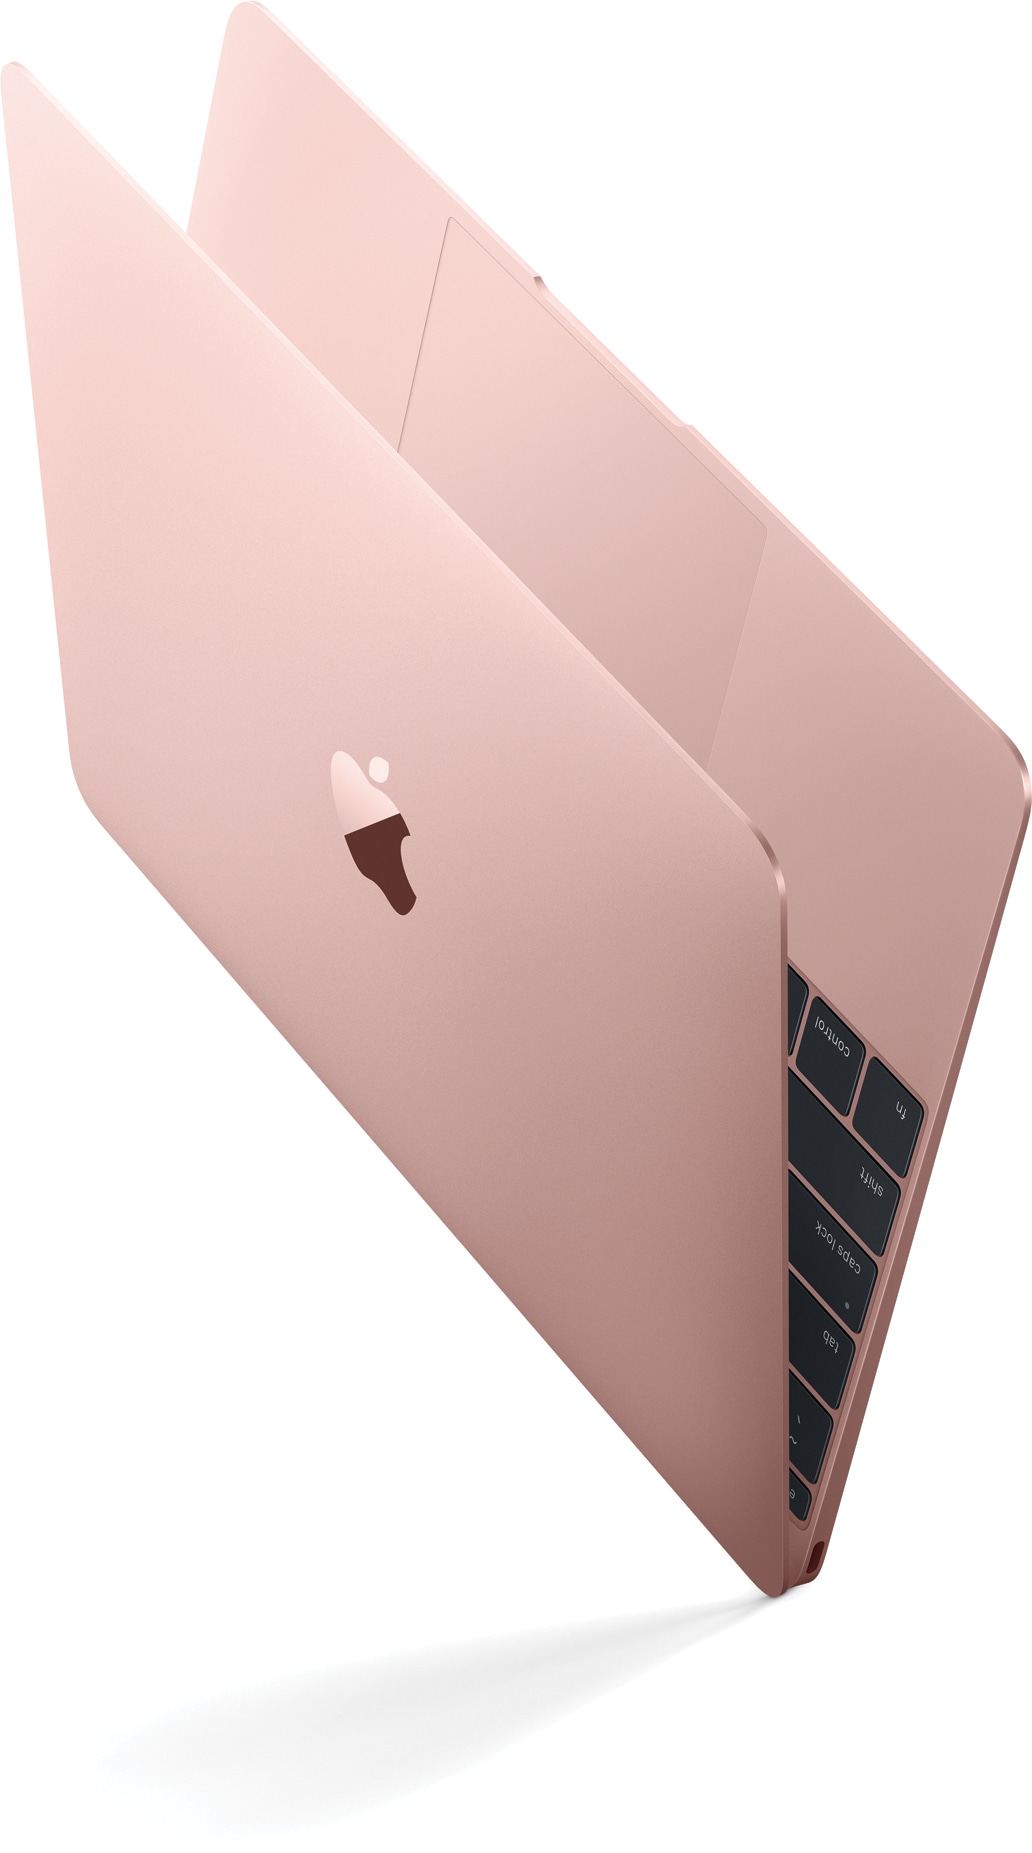 Mawar emas MacBook miring secara diagonal dan menyamping